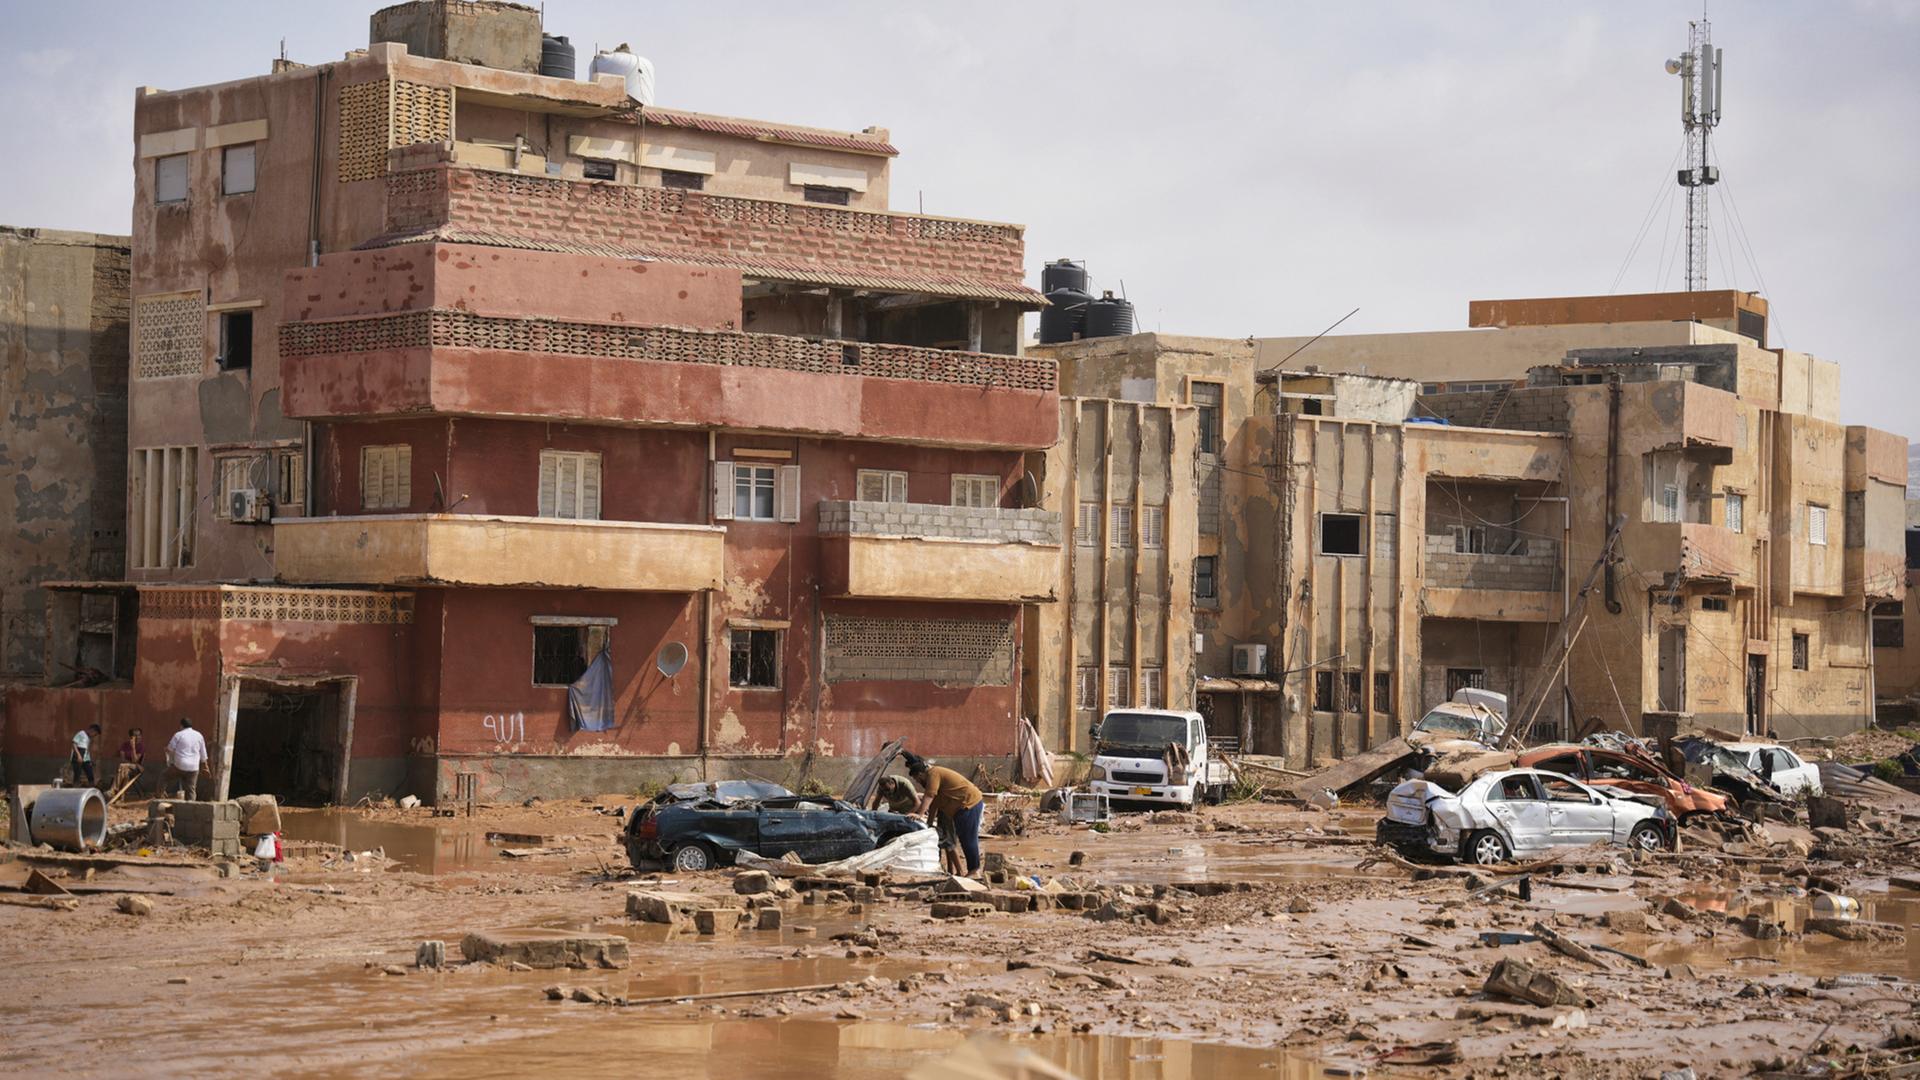 Libyen, Darna: Auf diesem von der libyschen Regierung zur Verfügung gestellten Bild liegen Autos und Trümmer in einer Straße in Darna, Libyen, nachdem sie durch starke Regenfälle überflutet wurde